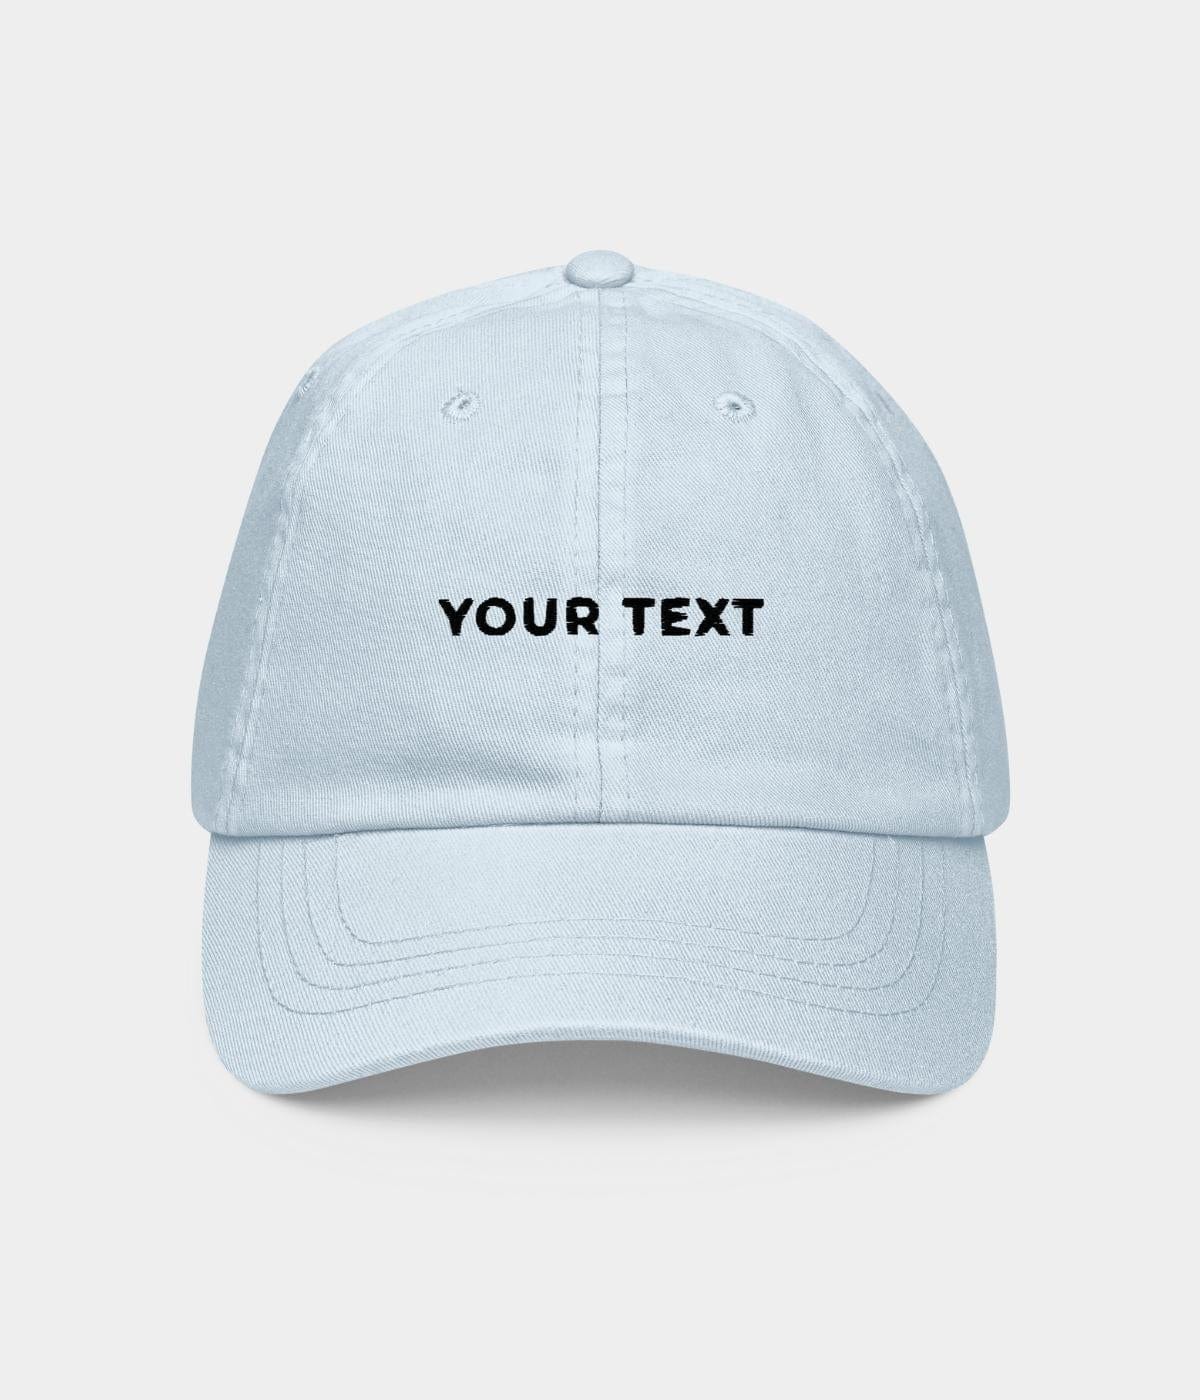 customize cap